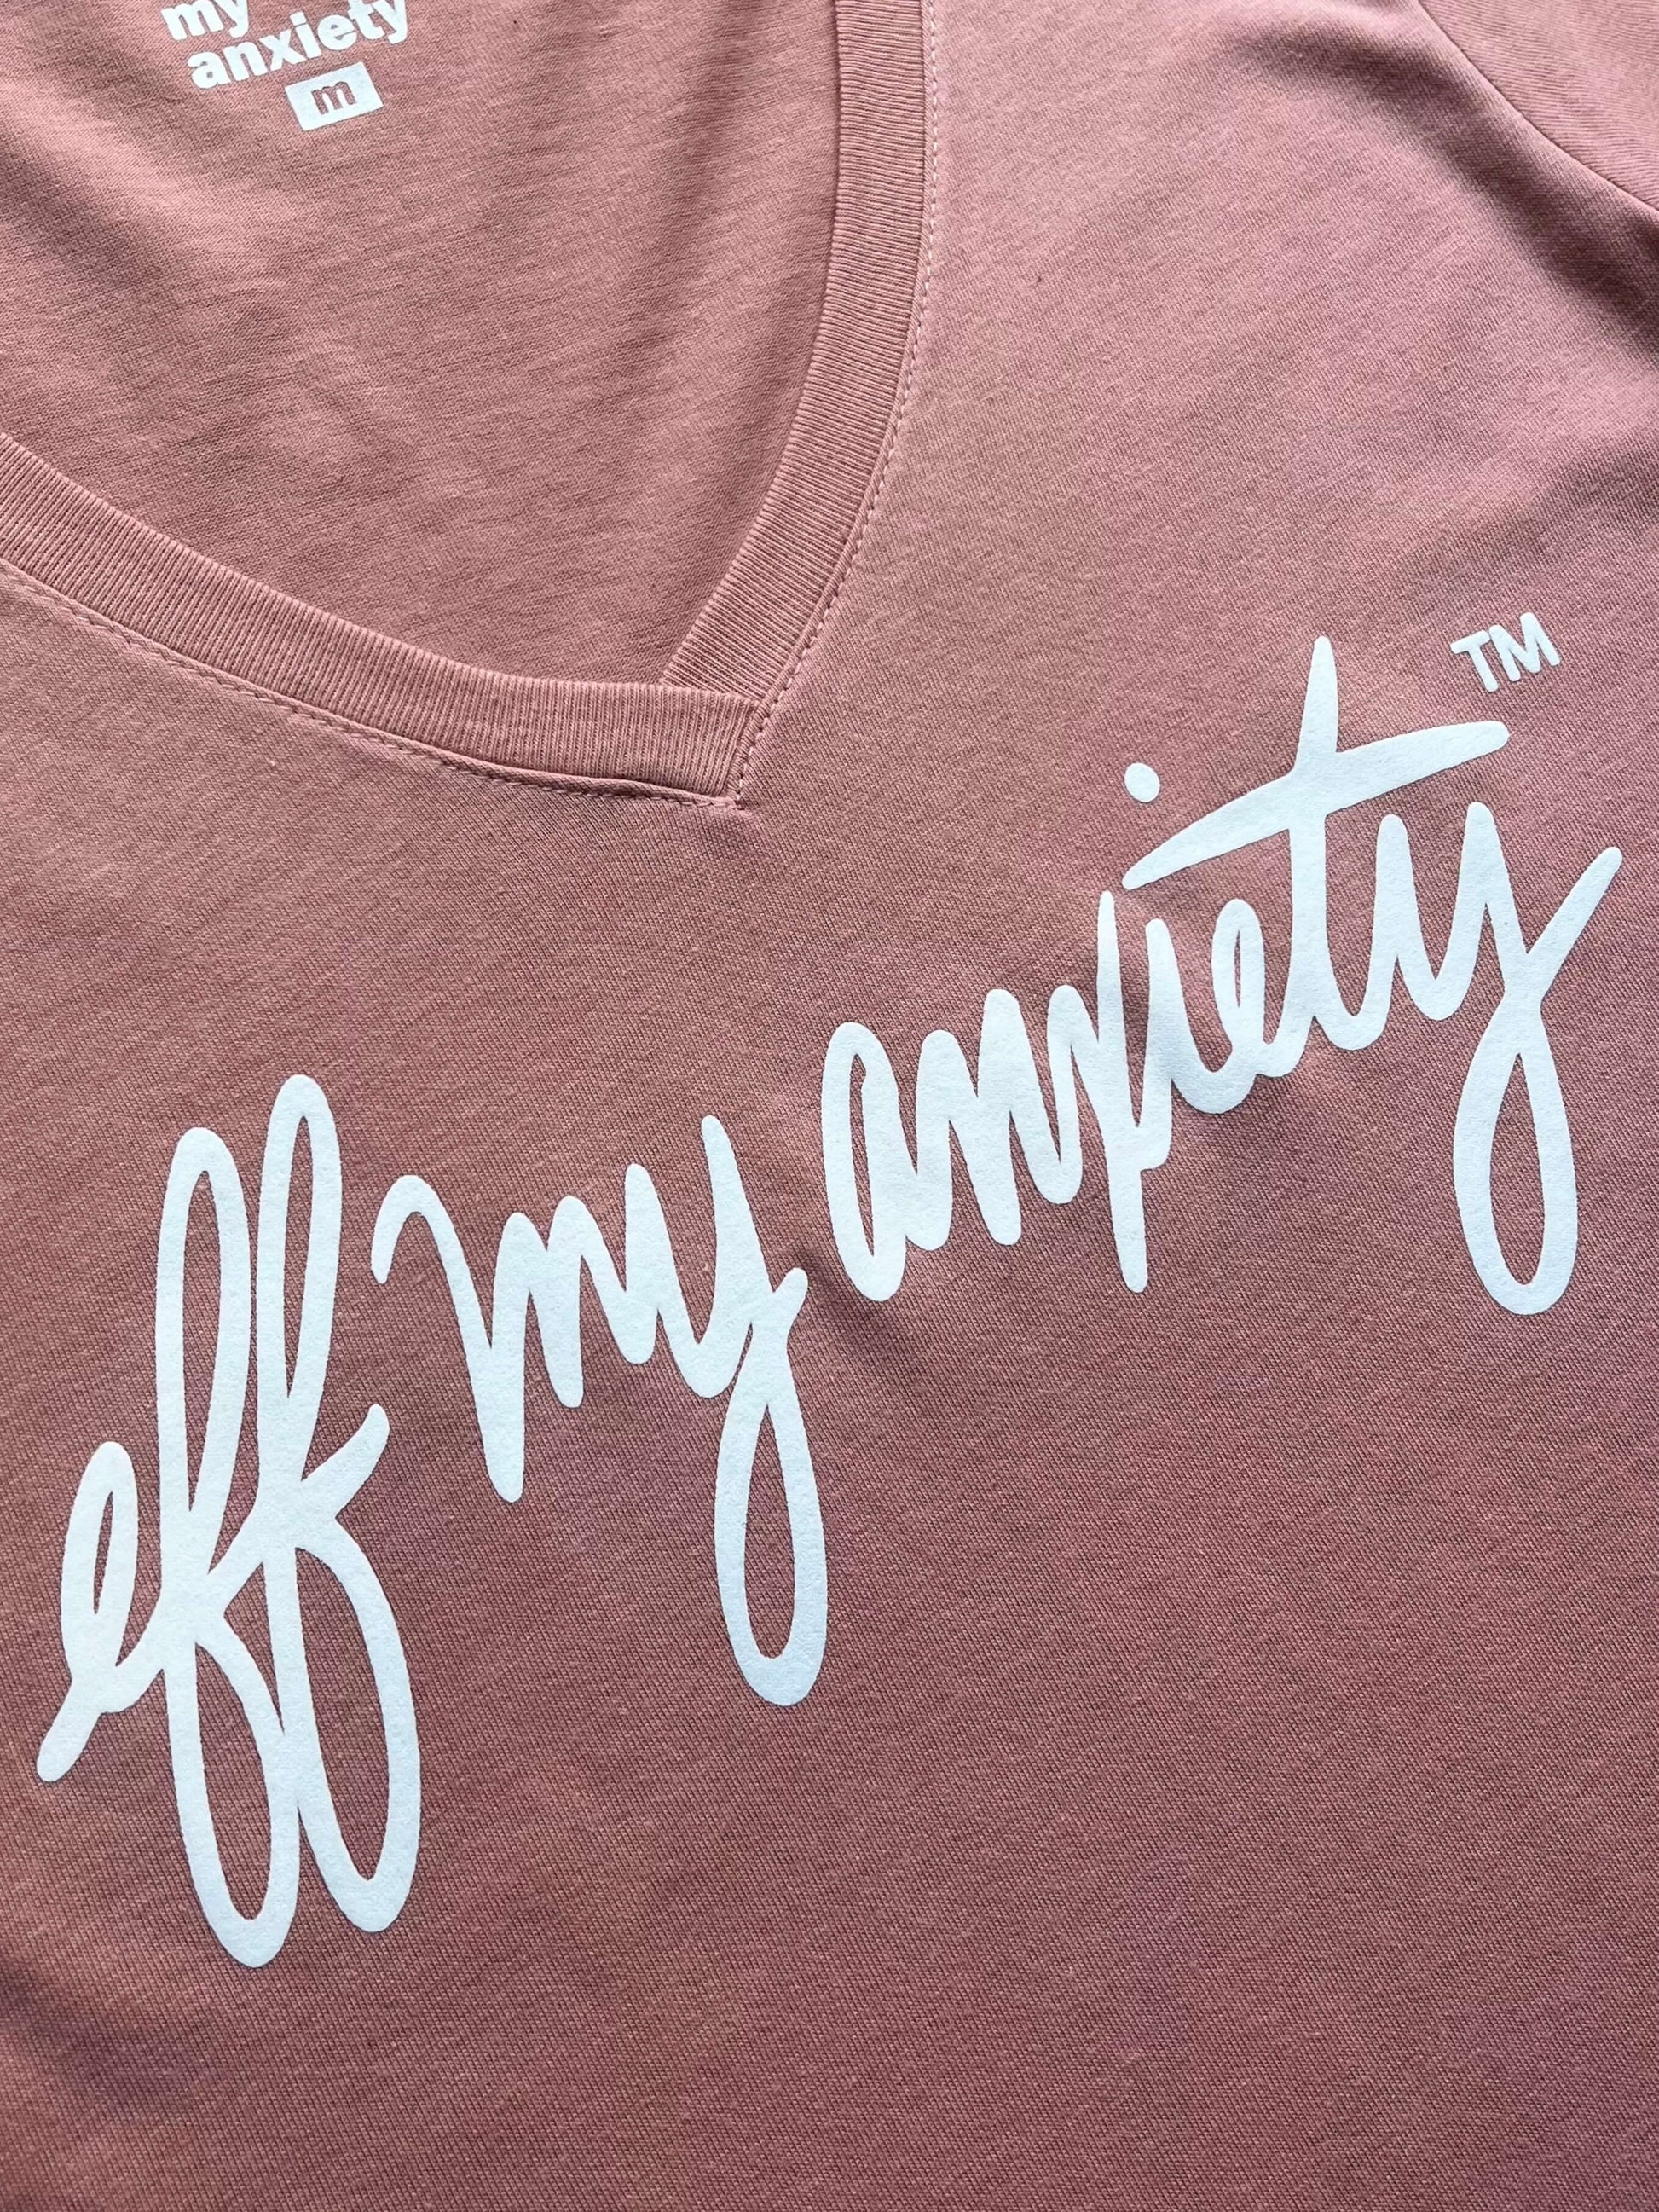 Anxiety Blob T shirt 2 png | Women's V-Neck T-Shirt